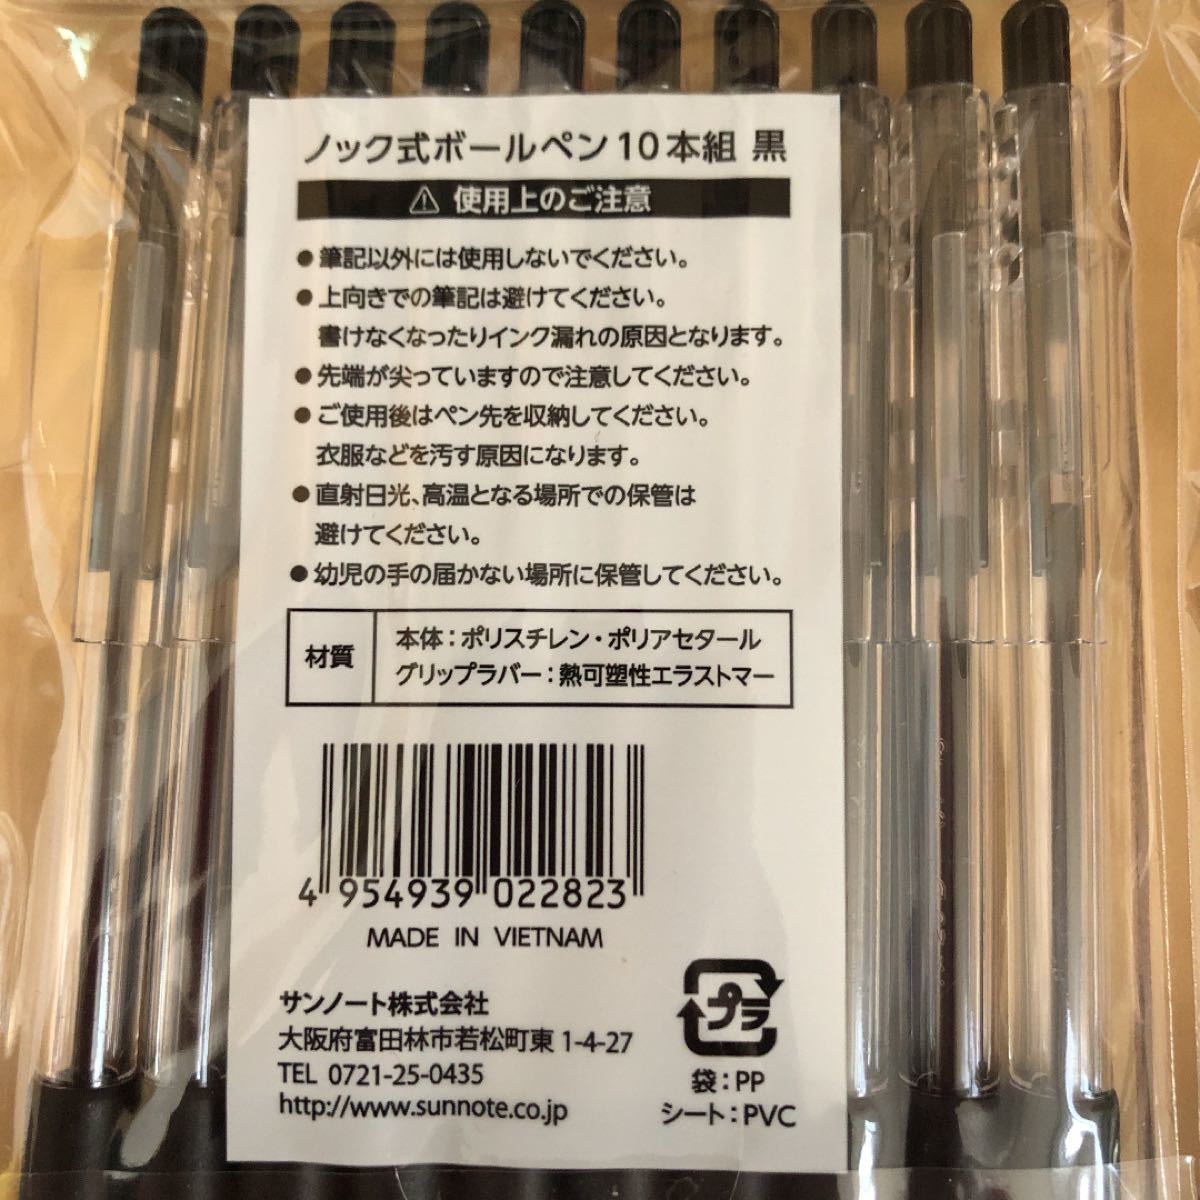 ボールペン 黒 油性 ノック式 40本 (10本×4)セット ブラック 筆記用具 文房具 ペン 事務用品 